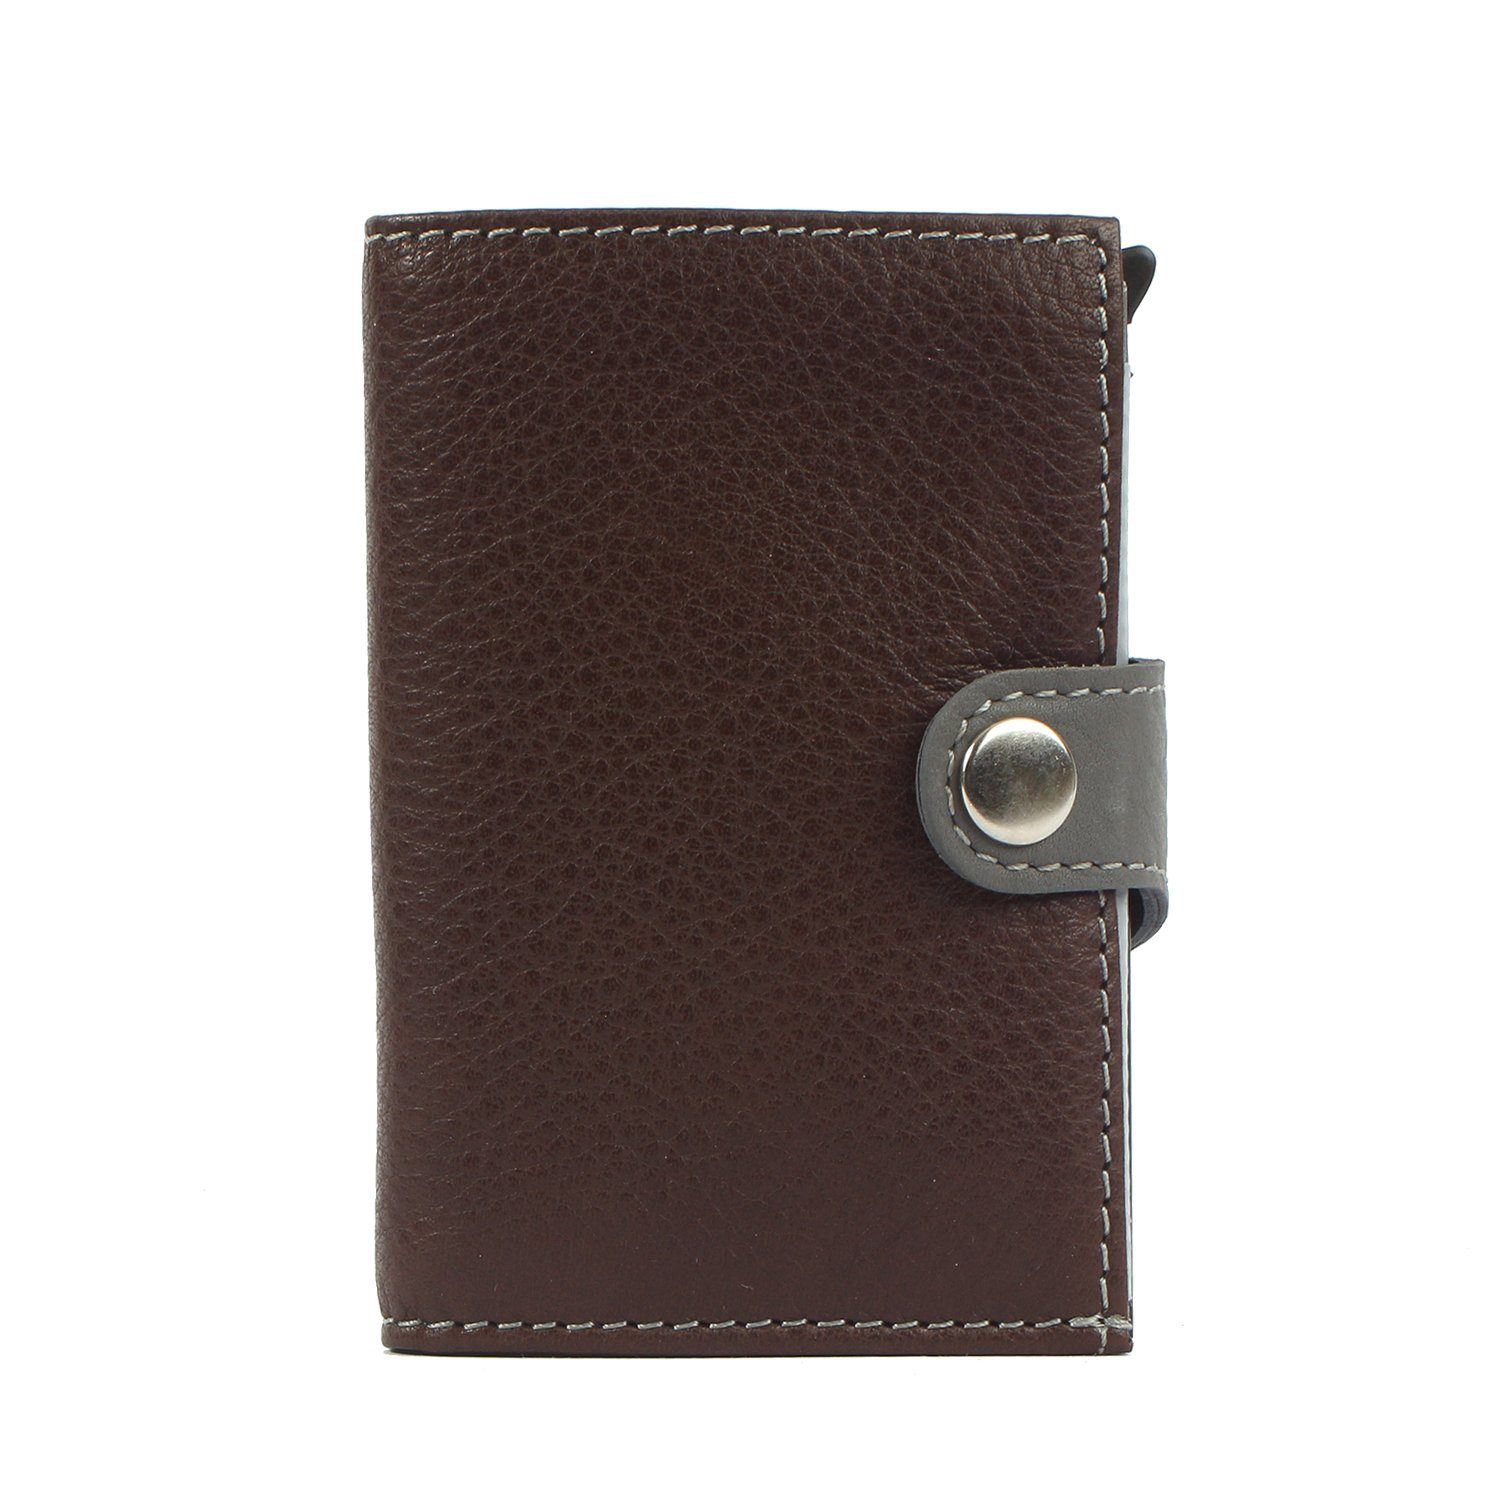 Kreditkartenbörse Geldbörse Margelisch Mini darkbrown noonyu aus Leder leather, Upcycling RFID double